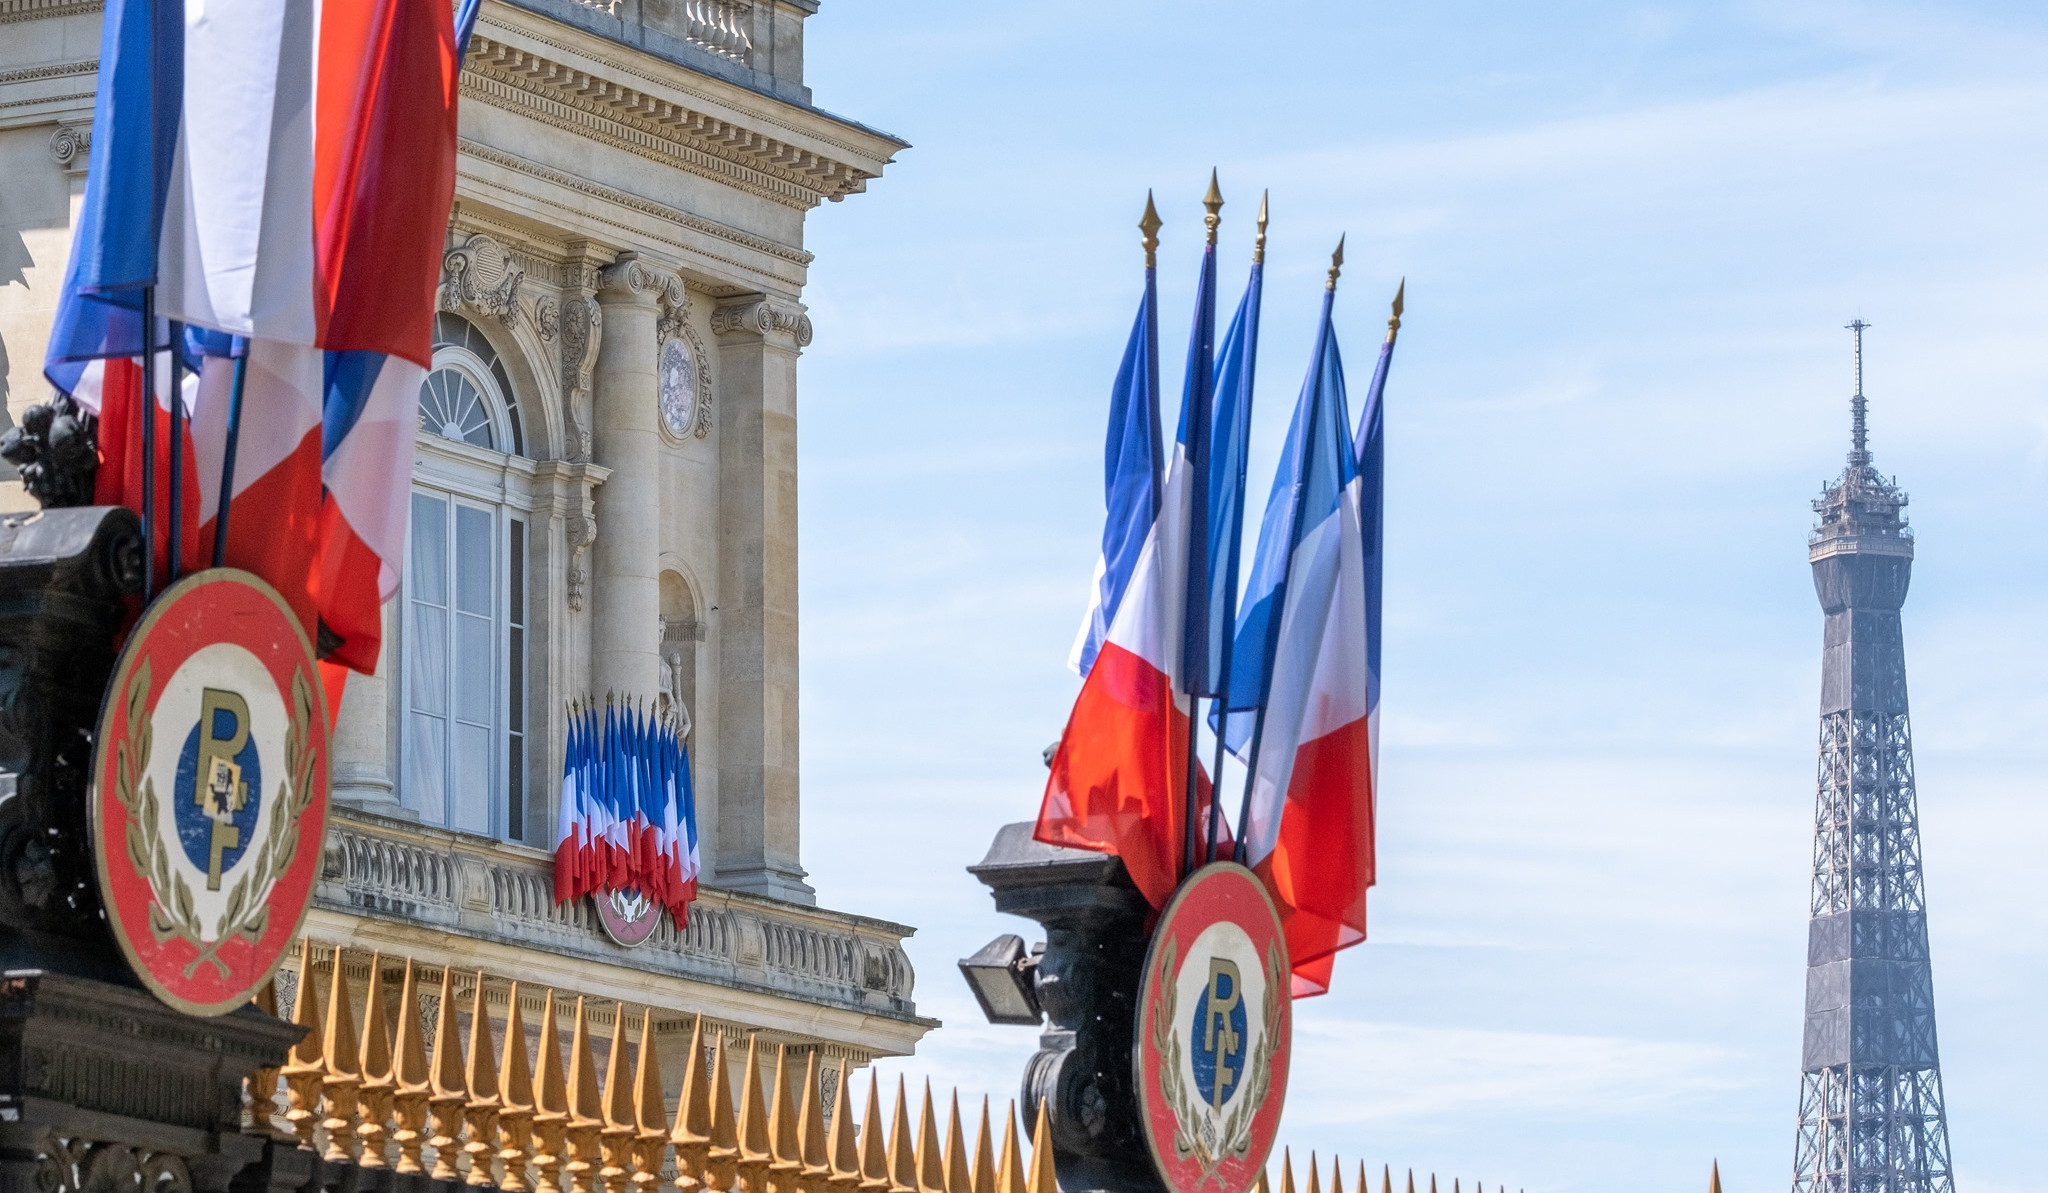 Ֆրանսիան մտահոգություն է հայտնել Ադրբեջանում ՔՀԿ ներկայացուցիչների և լրագրողների ձերբակալությունների կապակցությամբ